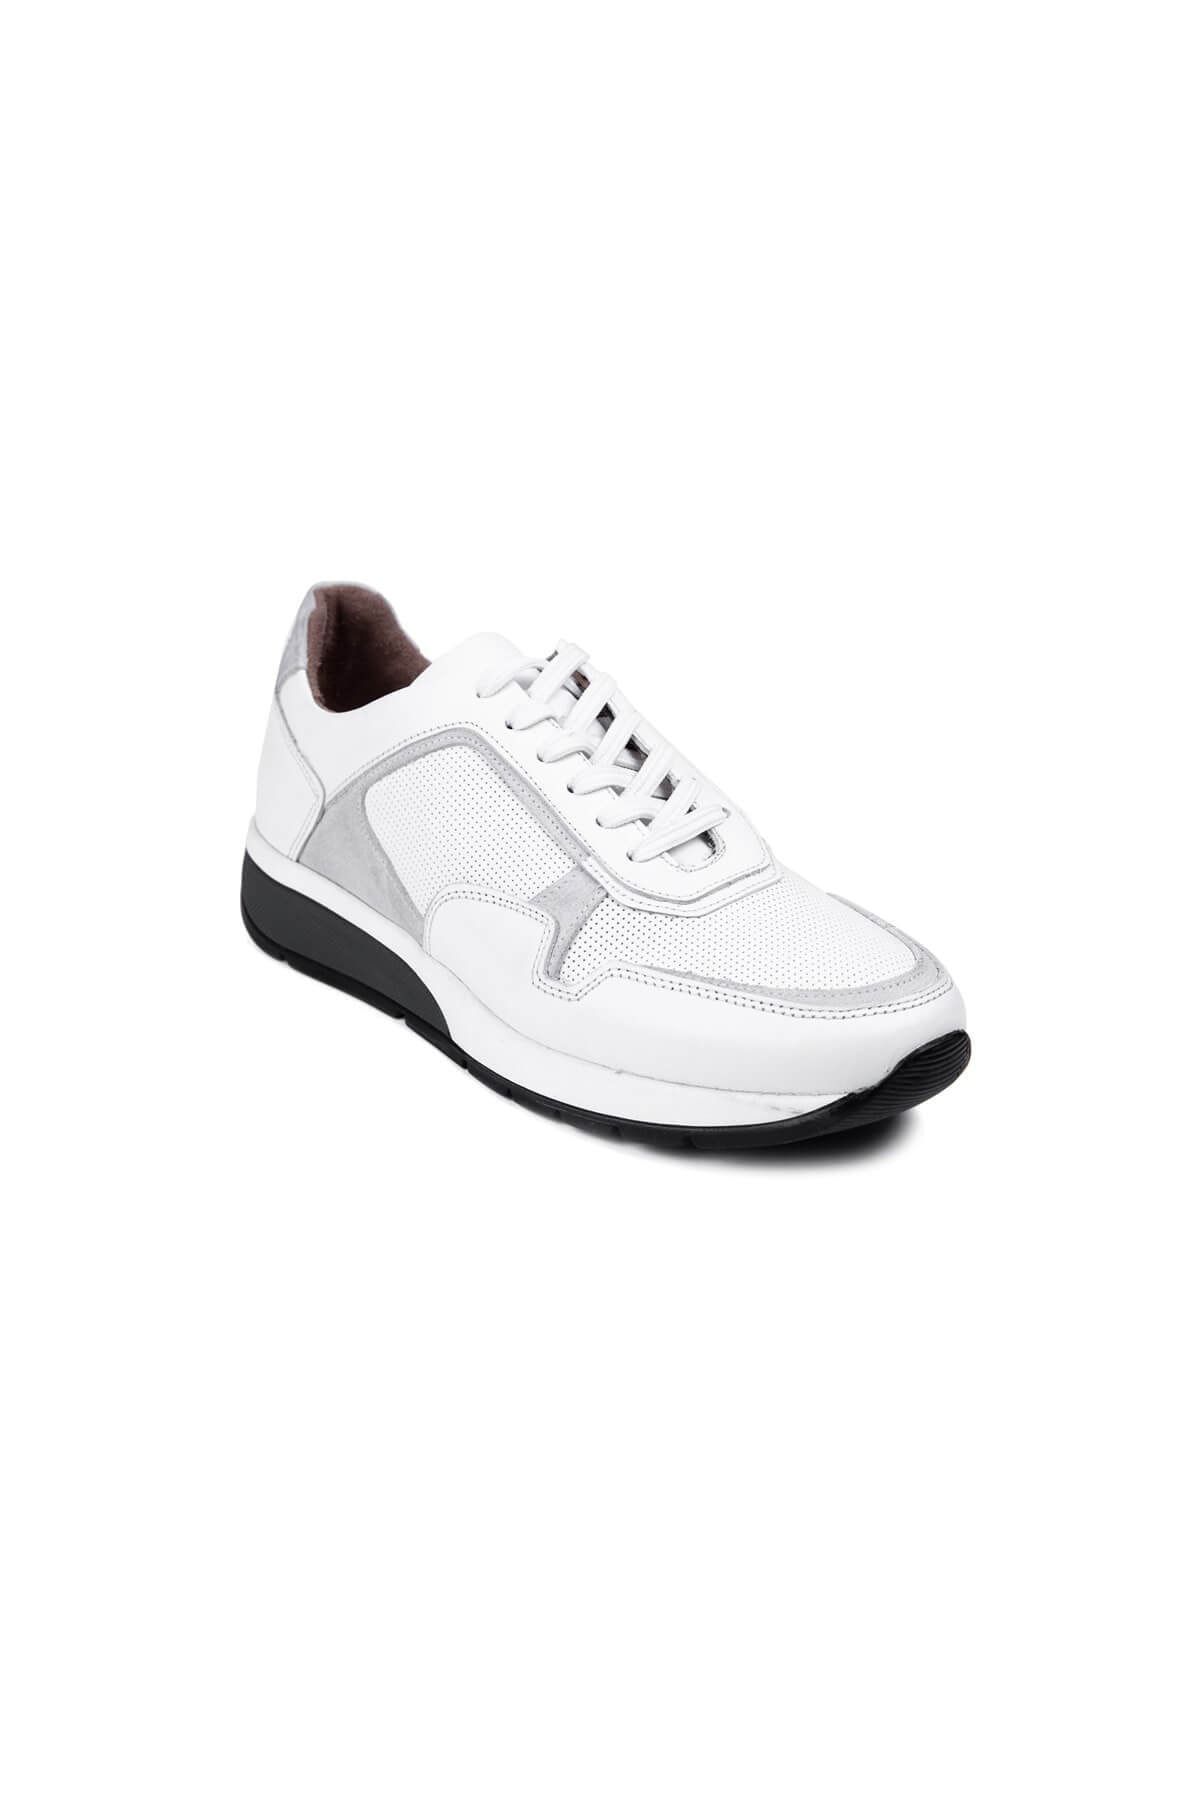 MARCOMEN Beyaz Hakiki Deri Erkek Günlük Sneaker Casual Spor Ayakkabı - 13284